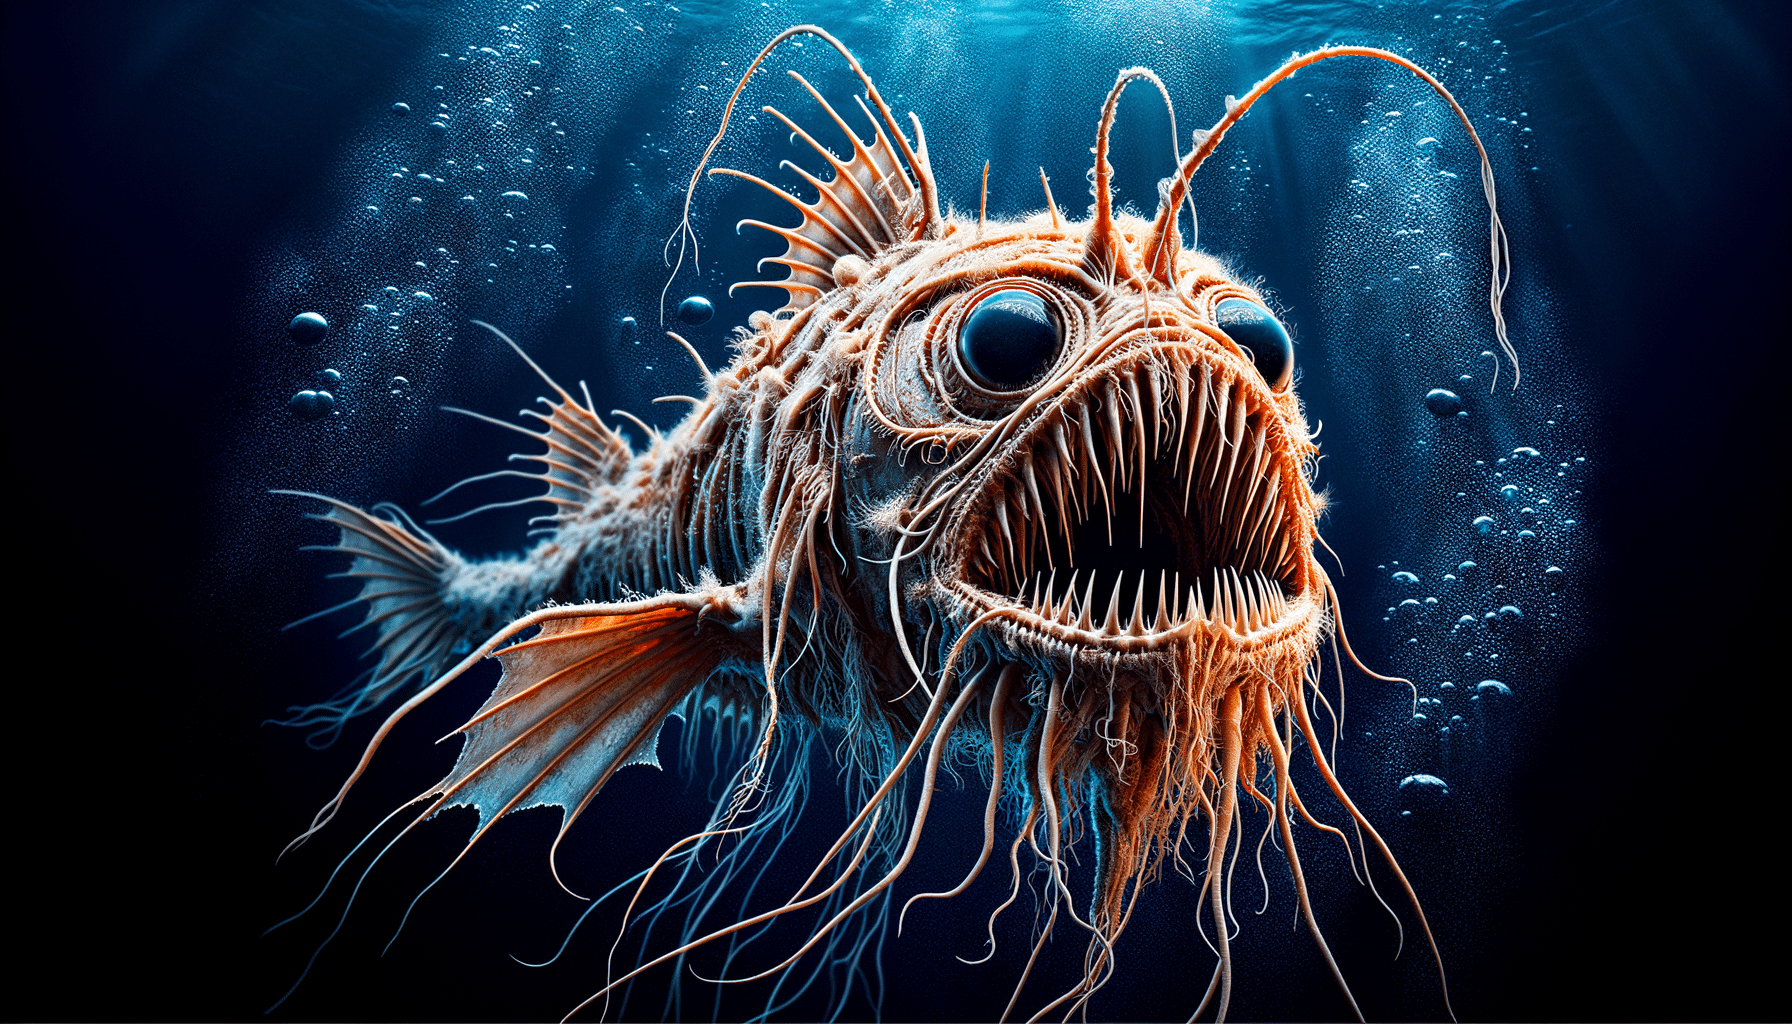 découvrez les créatures abyssales les plus étranges et surprenantes au monde dans ce top 10 fascinant. vous ne croirez pas à quoi ressemblent ces étranges habitants des profondeurs marines !